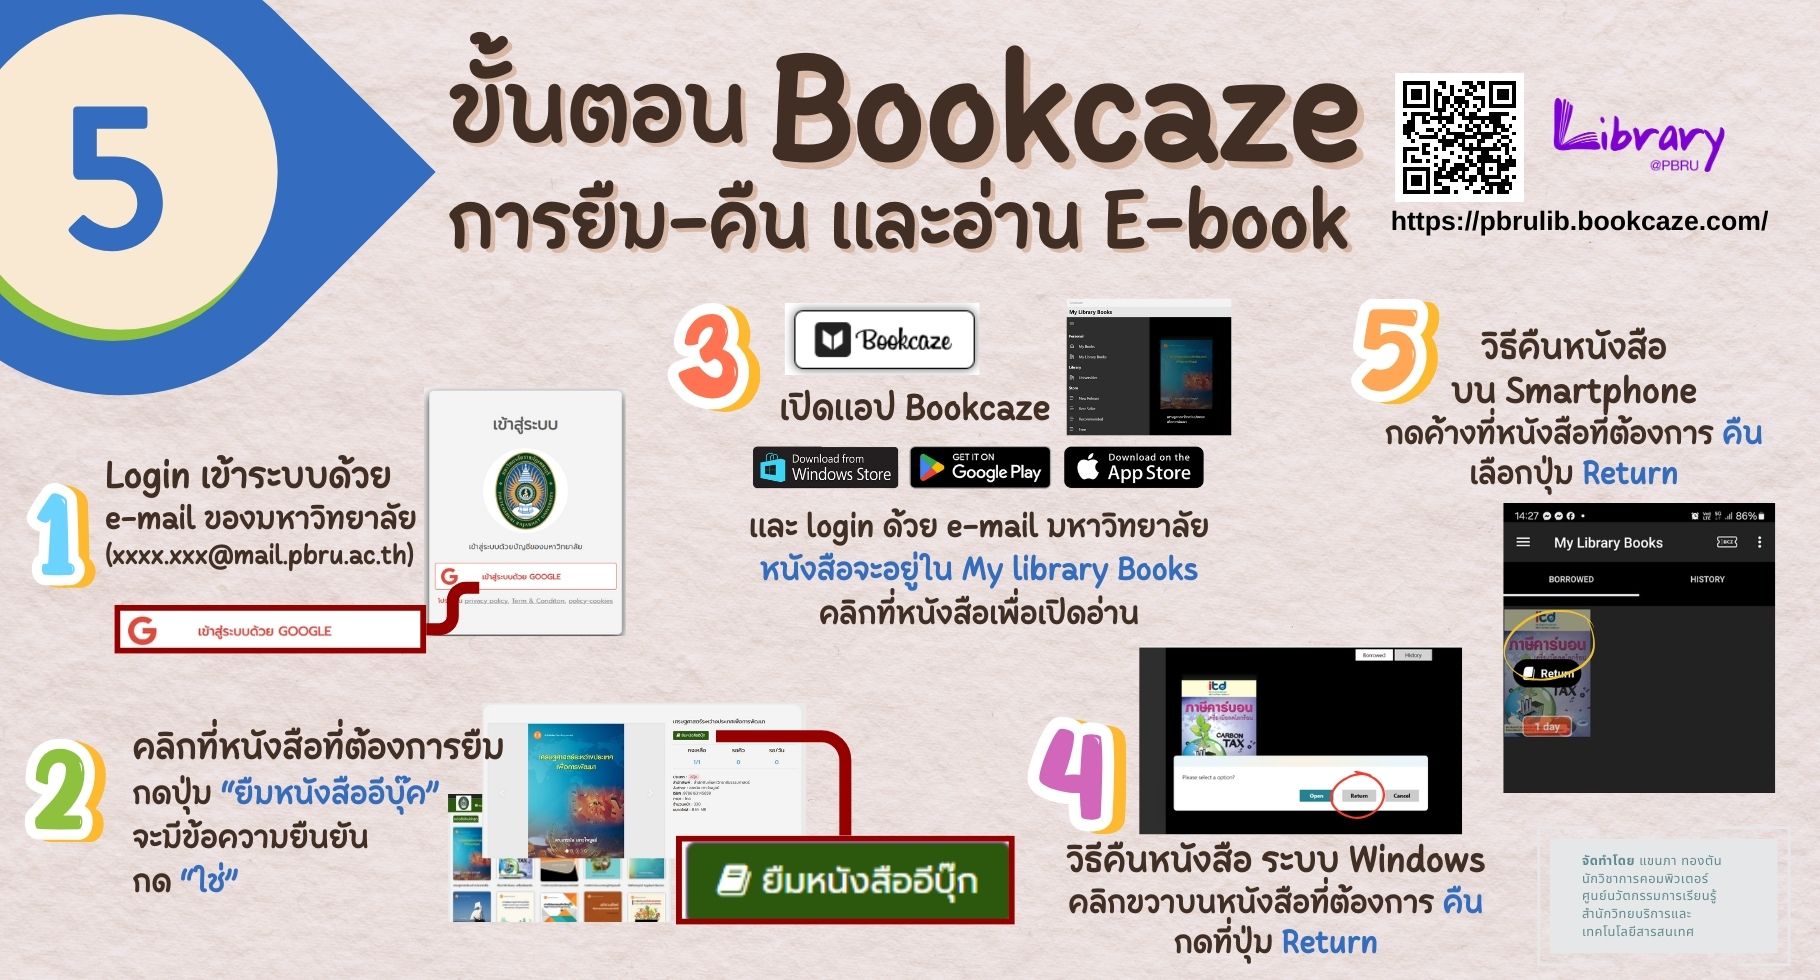 สำนักวิทยบริการฯ ให้บริการหนังสืออิเล็กทรอนิกส์ภาษาไทย (E-Book) รวบรวมทรัพยากร ทั้งที่เป็น หนังสือ และนิตยสาร จากหลากหลายสำนักพิมพ์ทั่วประเทศ สามารถเข้าใช้งานได้แล้ววันนี้